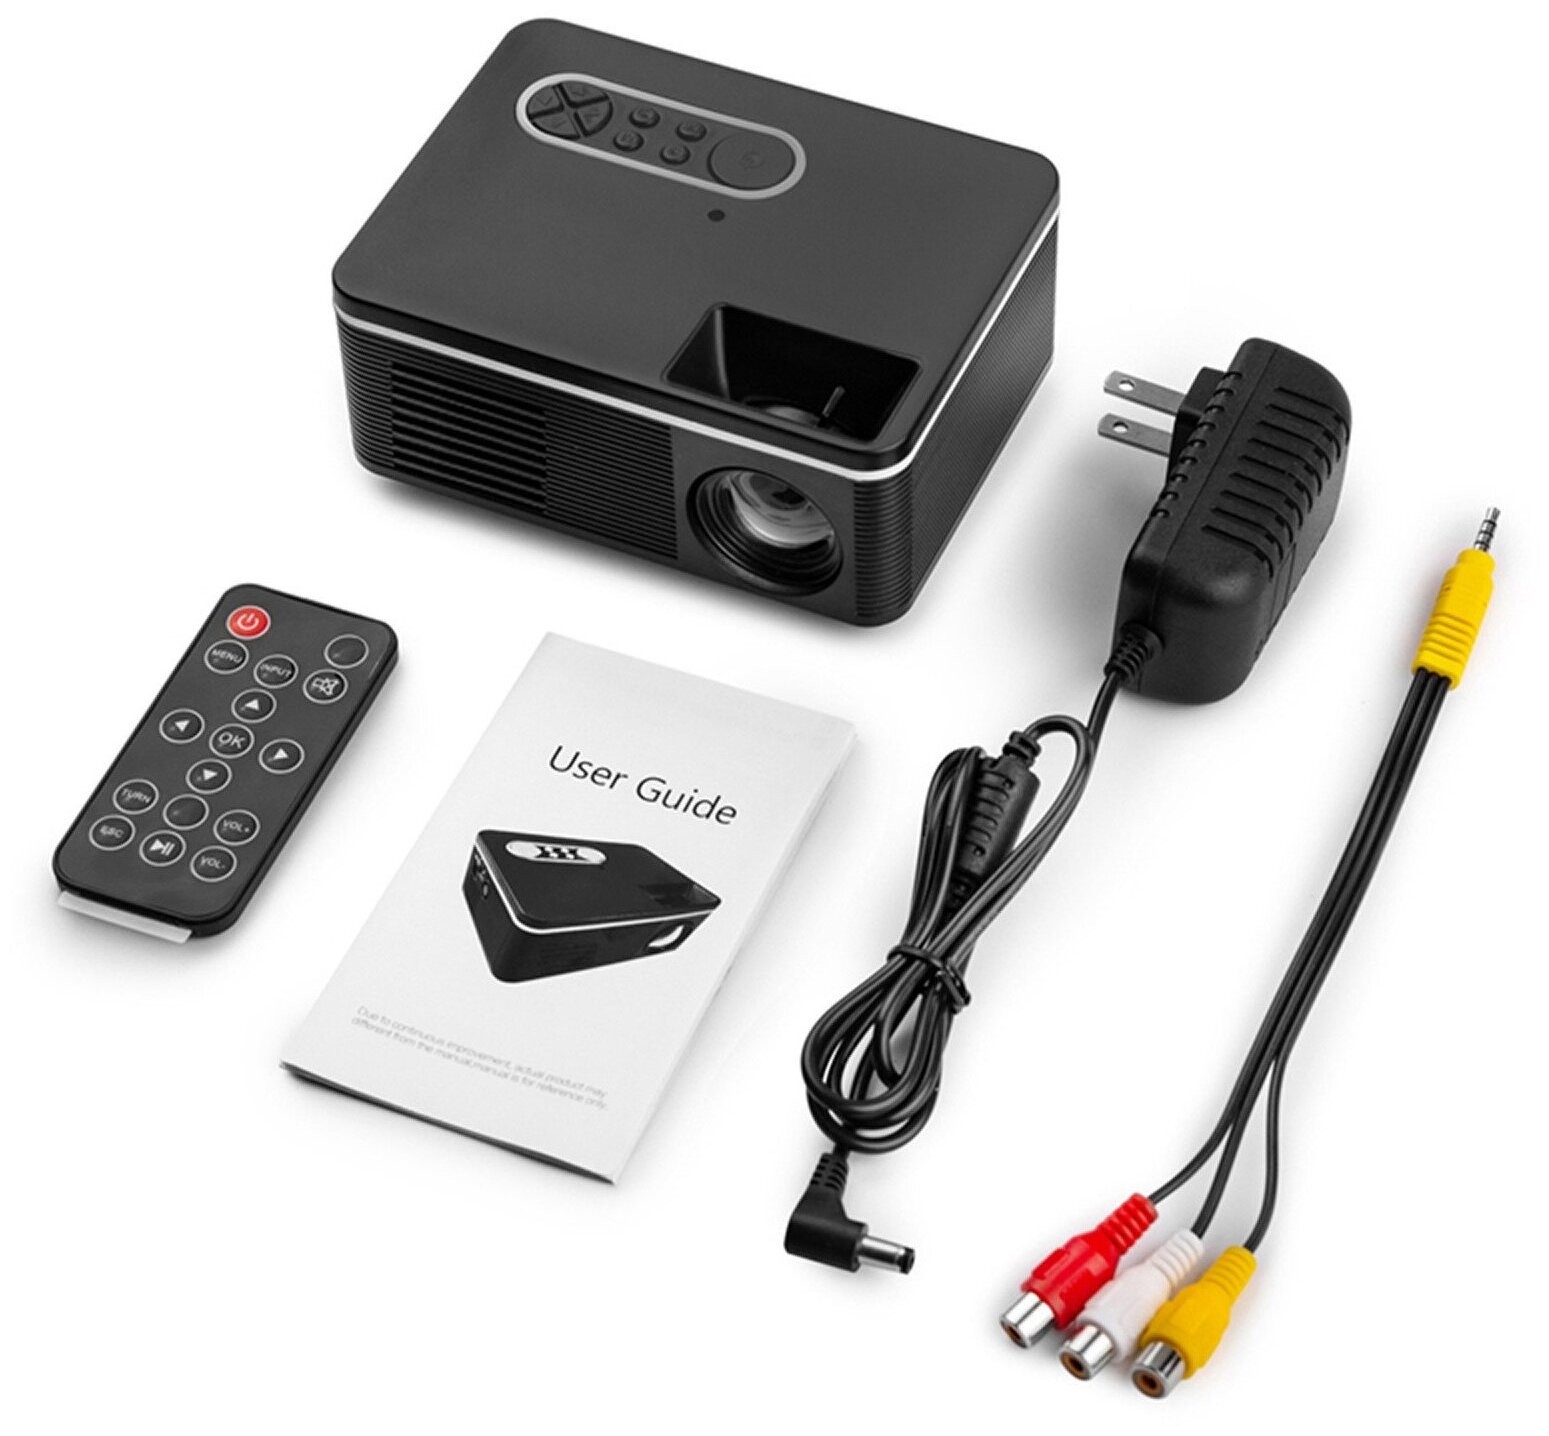 Домашний проектор для просмотра фильмов / Проектор для офиса / Видеопроектор портативный для дома 1920x1080 / Мультимедийный проектор YG360 HD Black